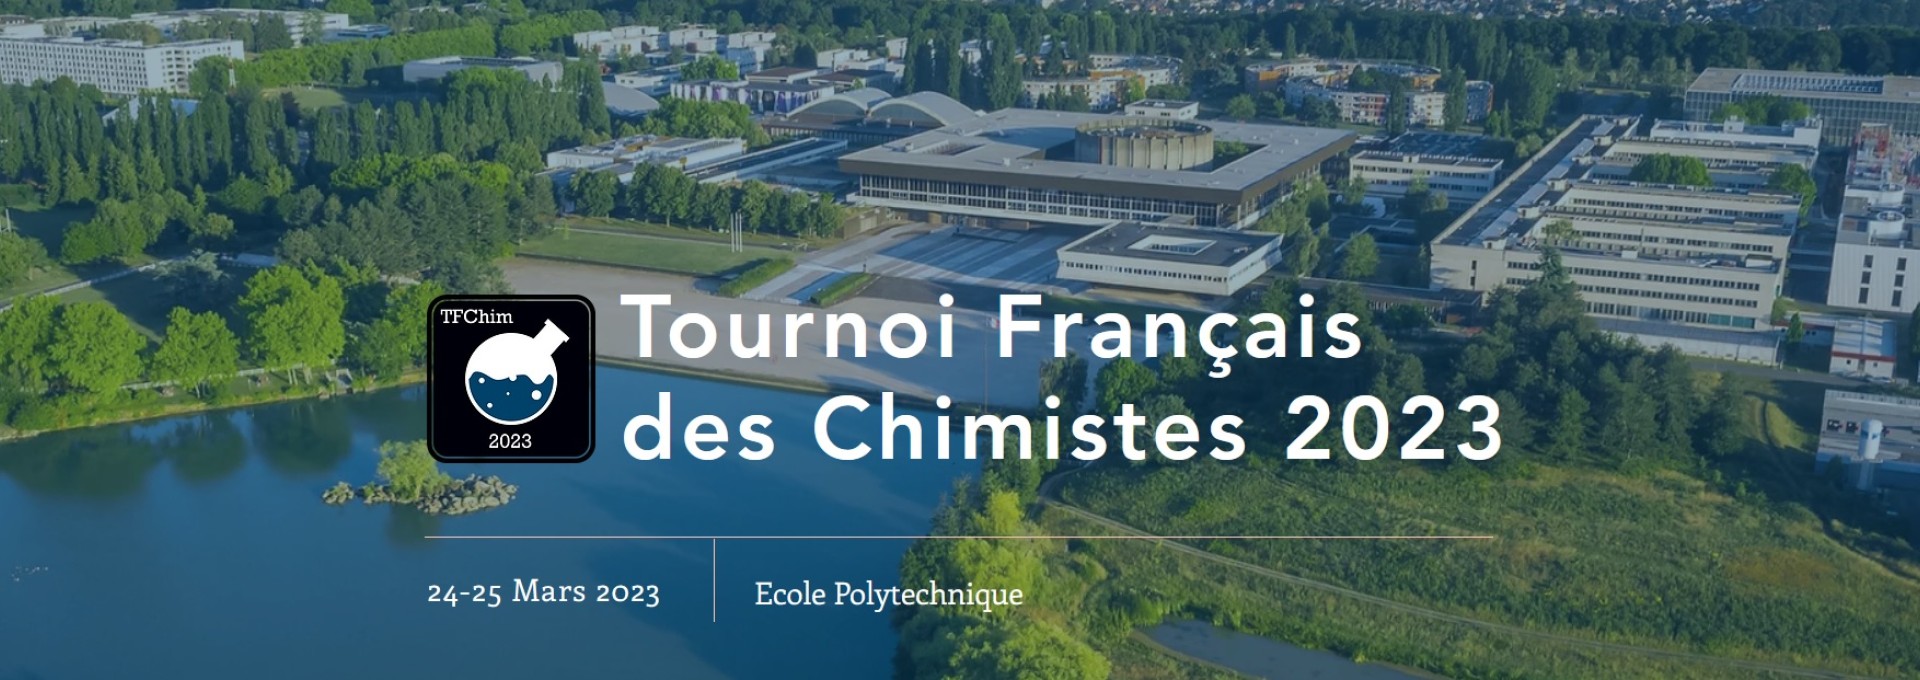 L’X organise la 3ème édition du Tournoi Français des Chimistes